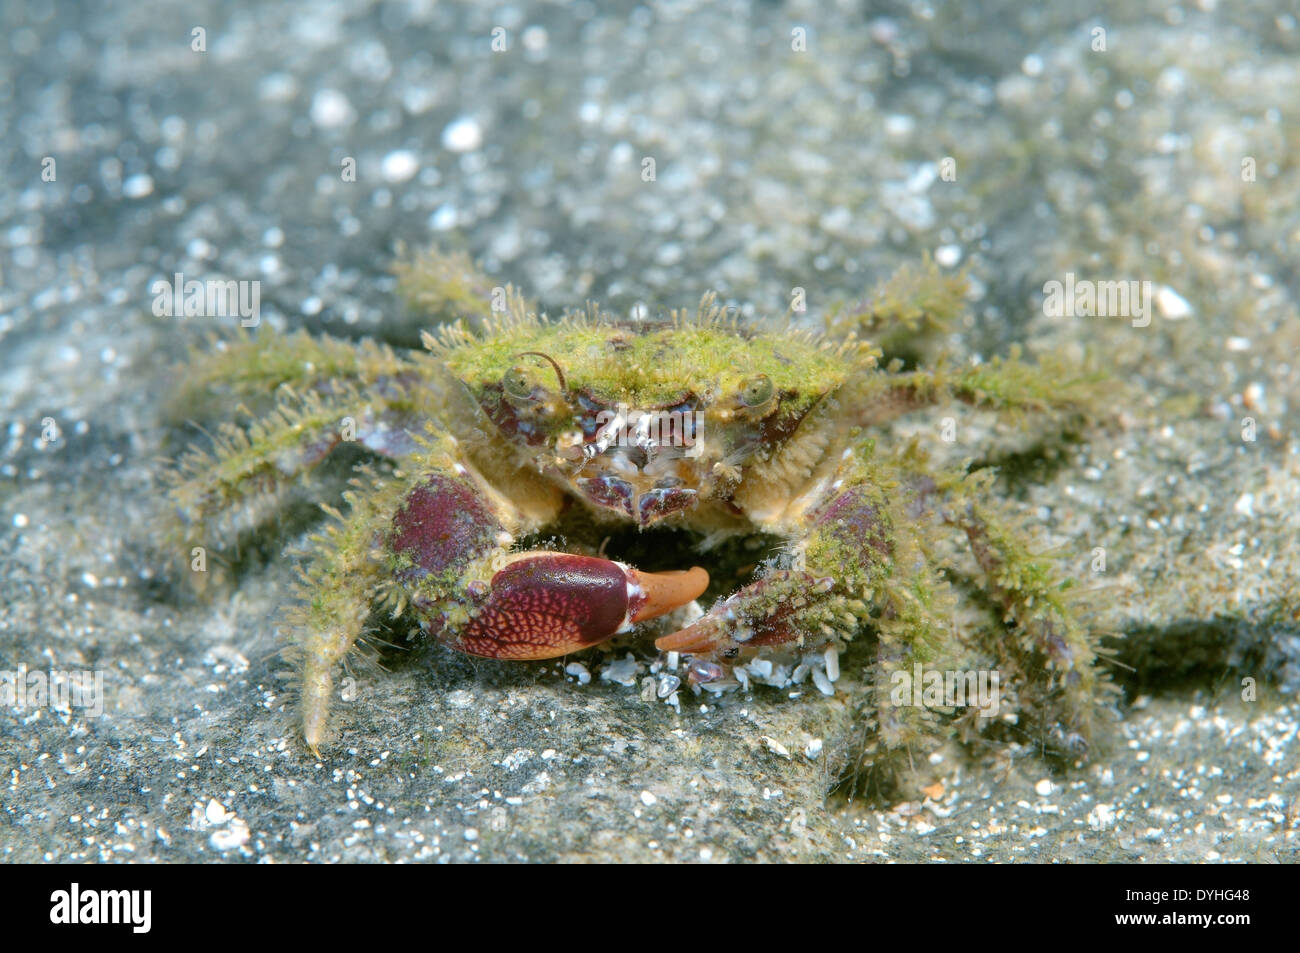 bristly crab or hairy crab (Pilumnus hirtellus) Black Sea, Crimea, Russia Stock Photo